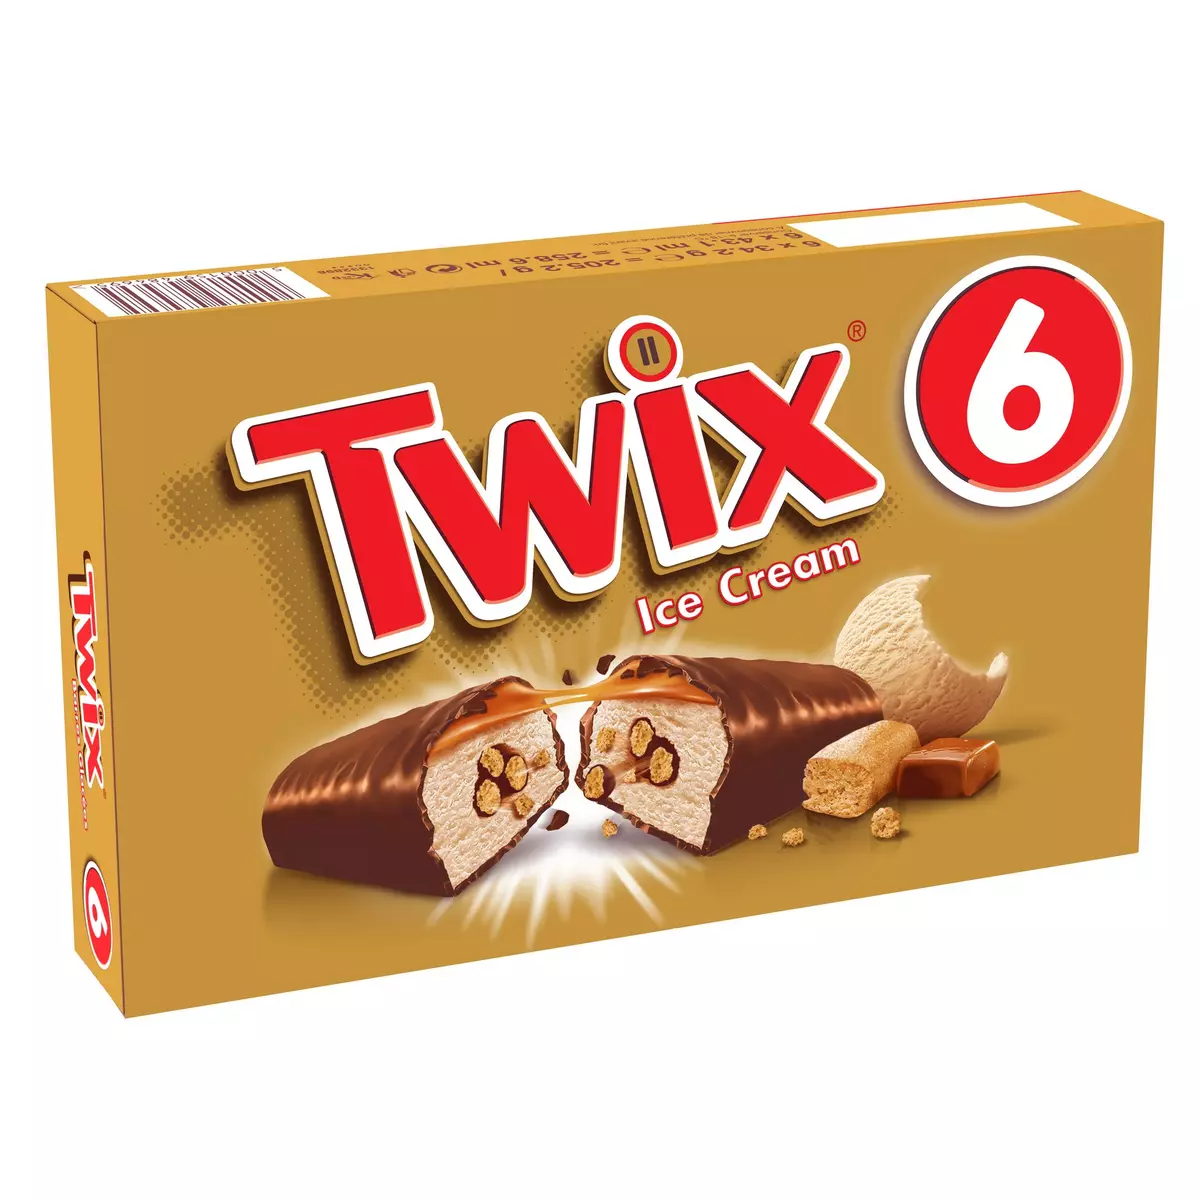 Twix, chocolat, 32 Barres